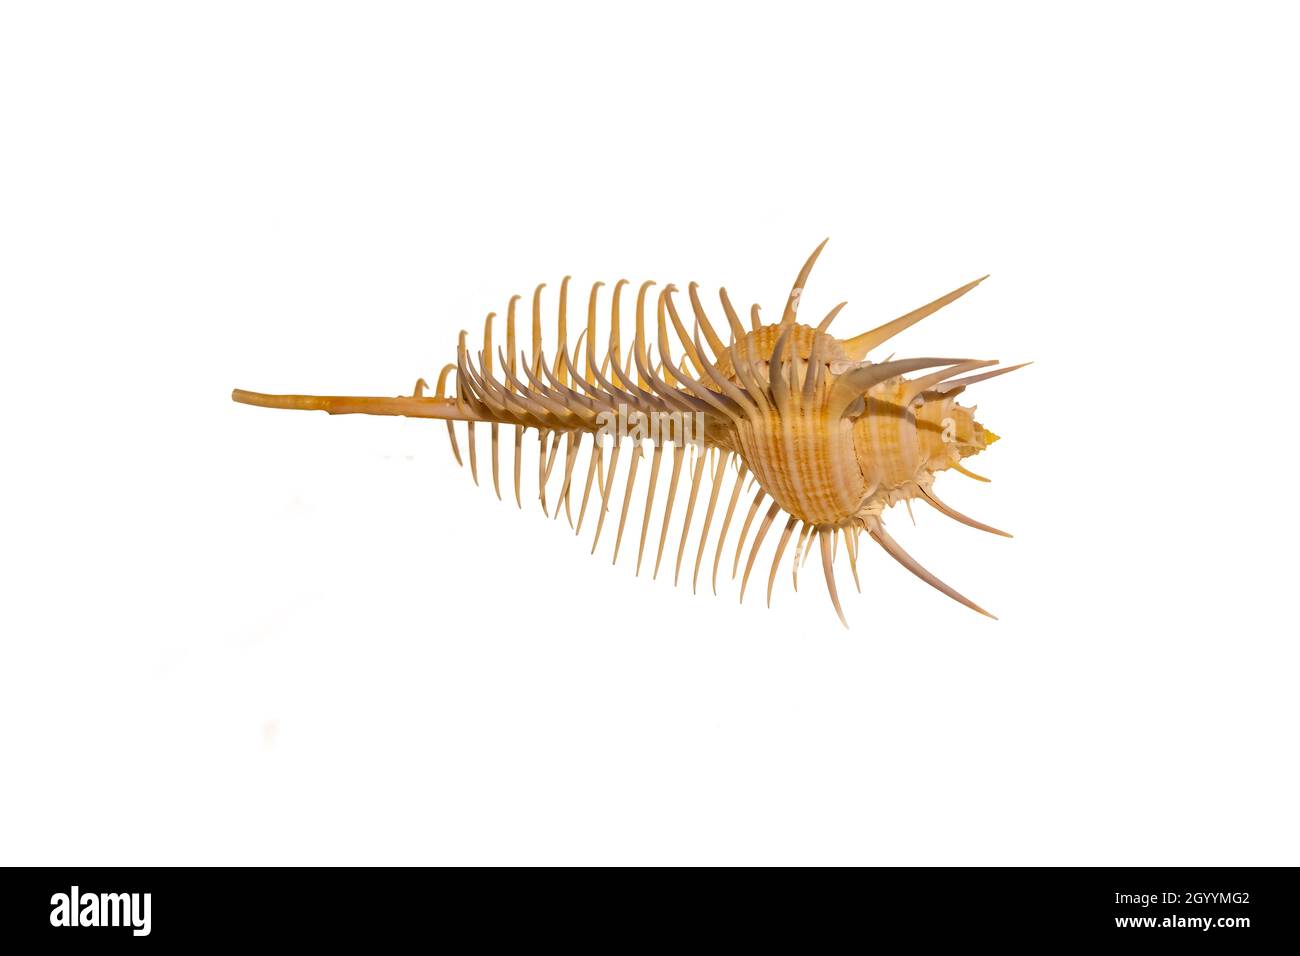 Detail des Skeletts einer Meeresschnecke. Meeresschnecke ist ein gebräuchlicher Name für langsam bewegende Meeresschnecken, meist mit sichtbaren äußeren Muscheln, Stockfoto